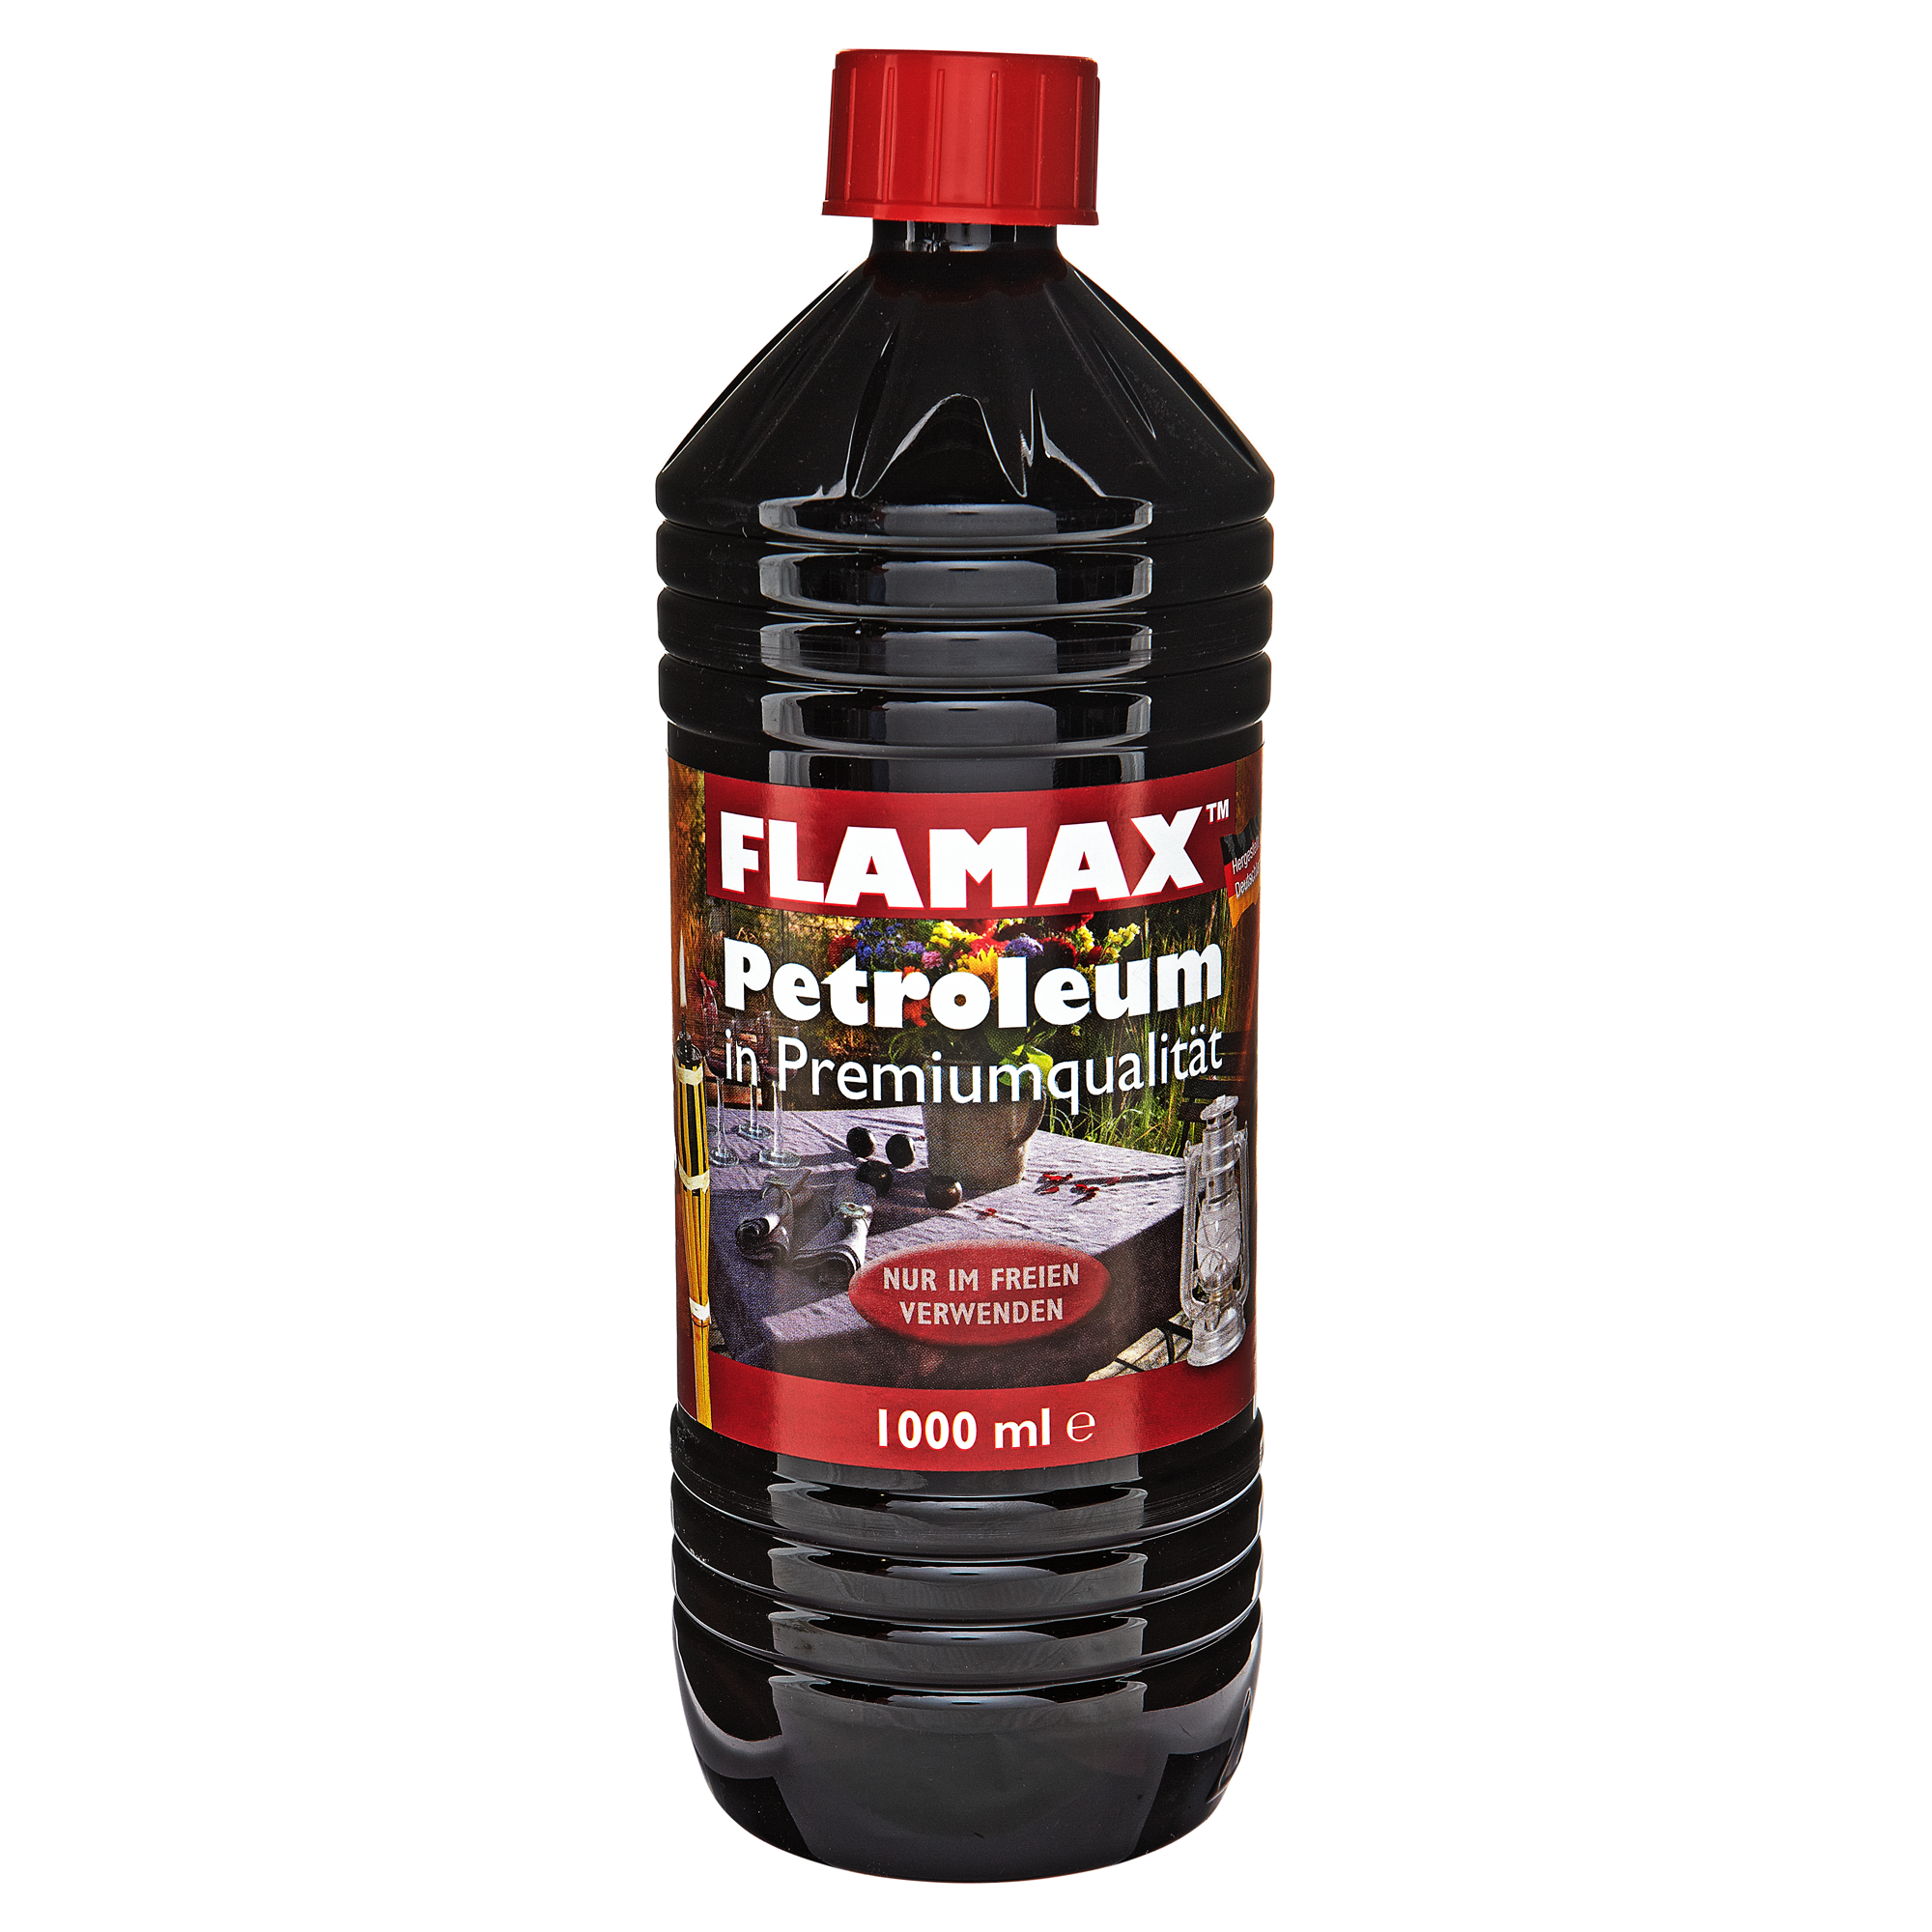 Petroleum 1 l